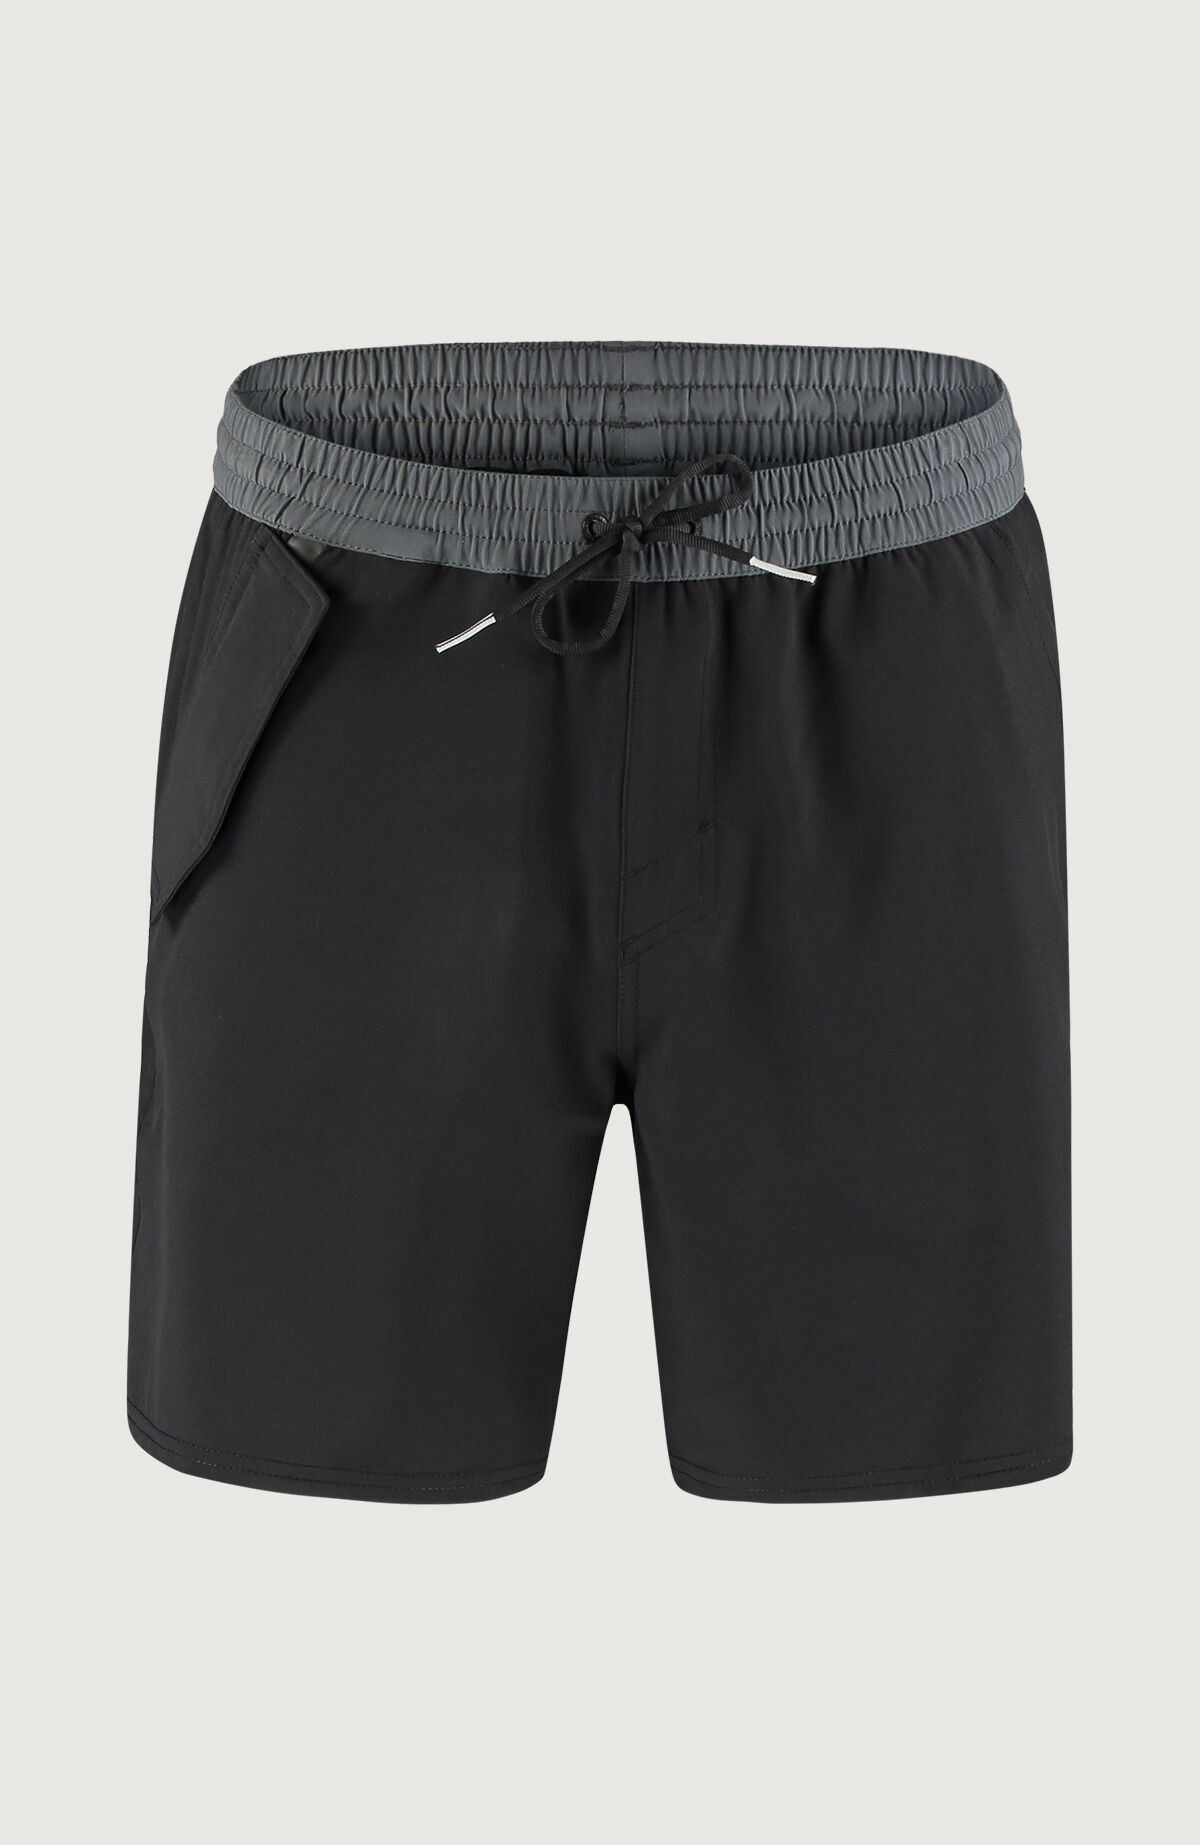 O'Neill Wp-Pocket Shorts - Badeshorts - Herren